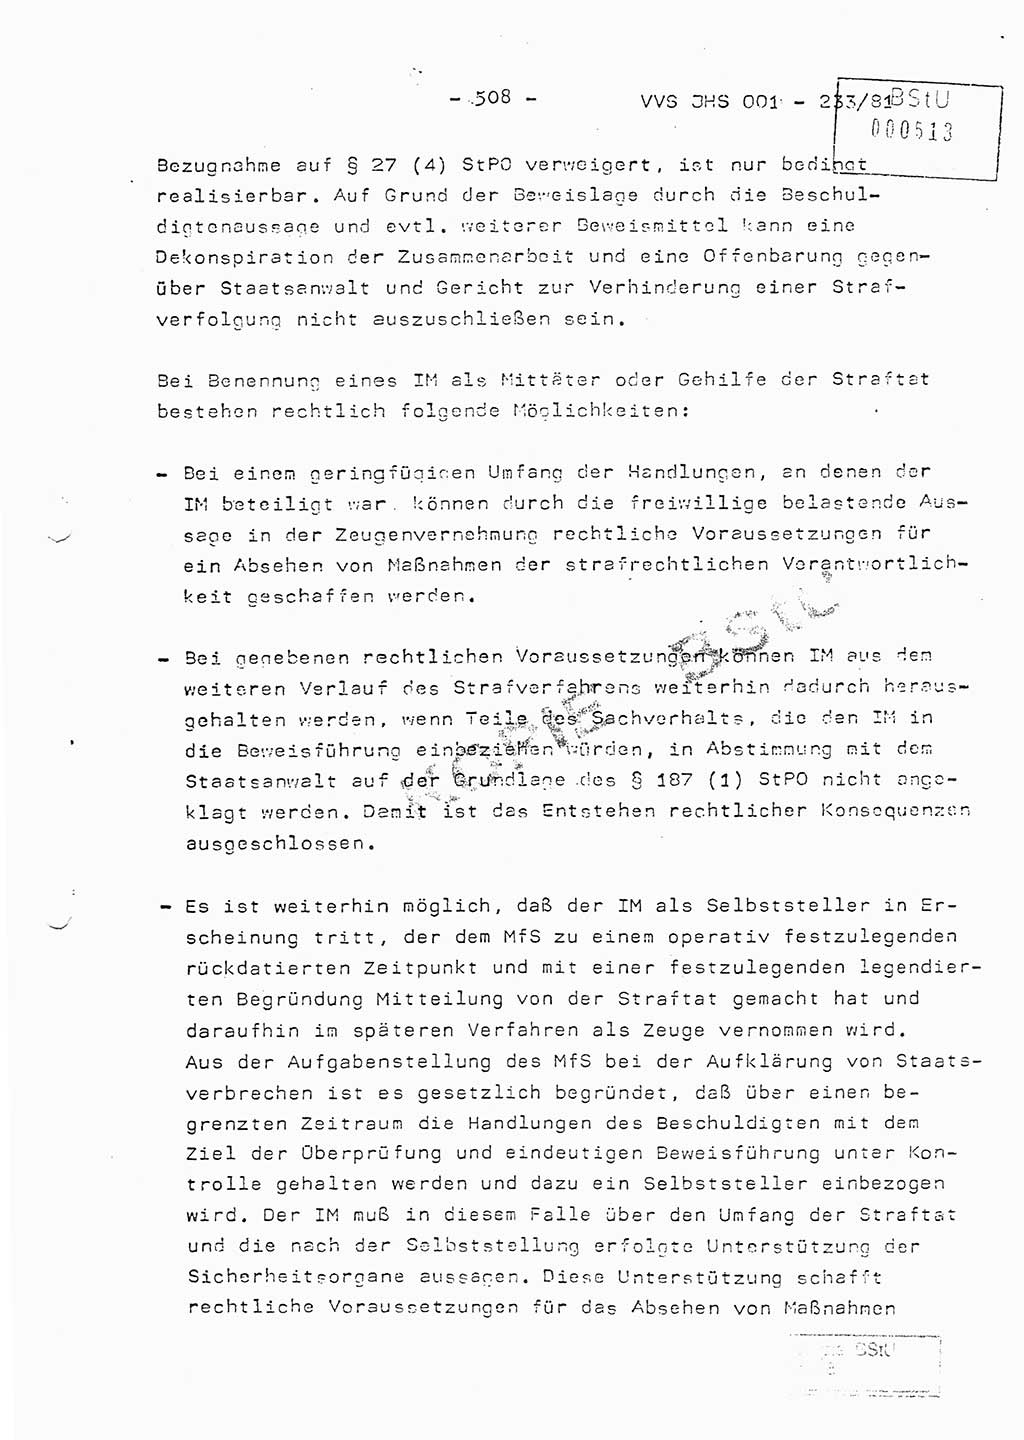 Dissertation Oberstleutnant Horst Zank (JHS), Oberstleutnant Dr. Karl-Heinz Knoblauch (JHS), Oberstleutnant Gustav-Adolf Kowalewski (HA Ⅸ), Oberstleutnant Wolfgang Plötner (HA Ⅸ), Ministerium für Staatssicherheit (MfS) [Deutsche Demokratische Republik (DDR)], Juristische Hochschule (JHS), Vertrauliche Verschlußsache (VVS) o001-233/81, Potsdam 1981, Blatt 508 (Diss. MfS DDR JHS VVS o001-233/81 1981, Bl. 508)